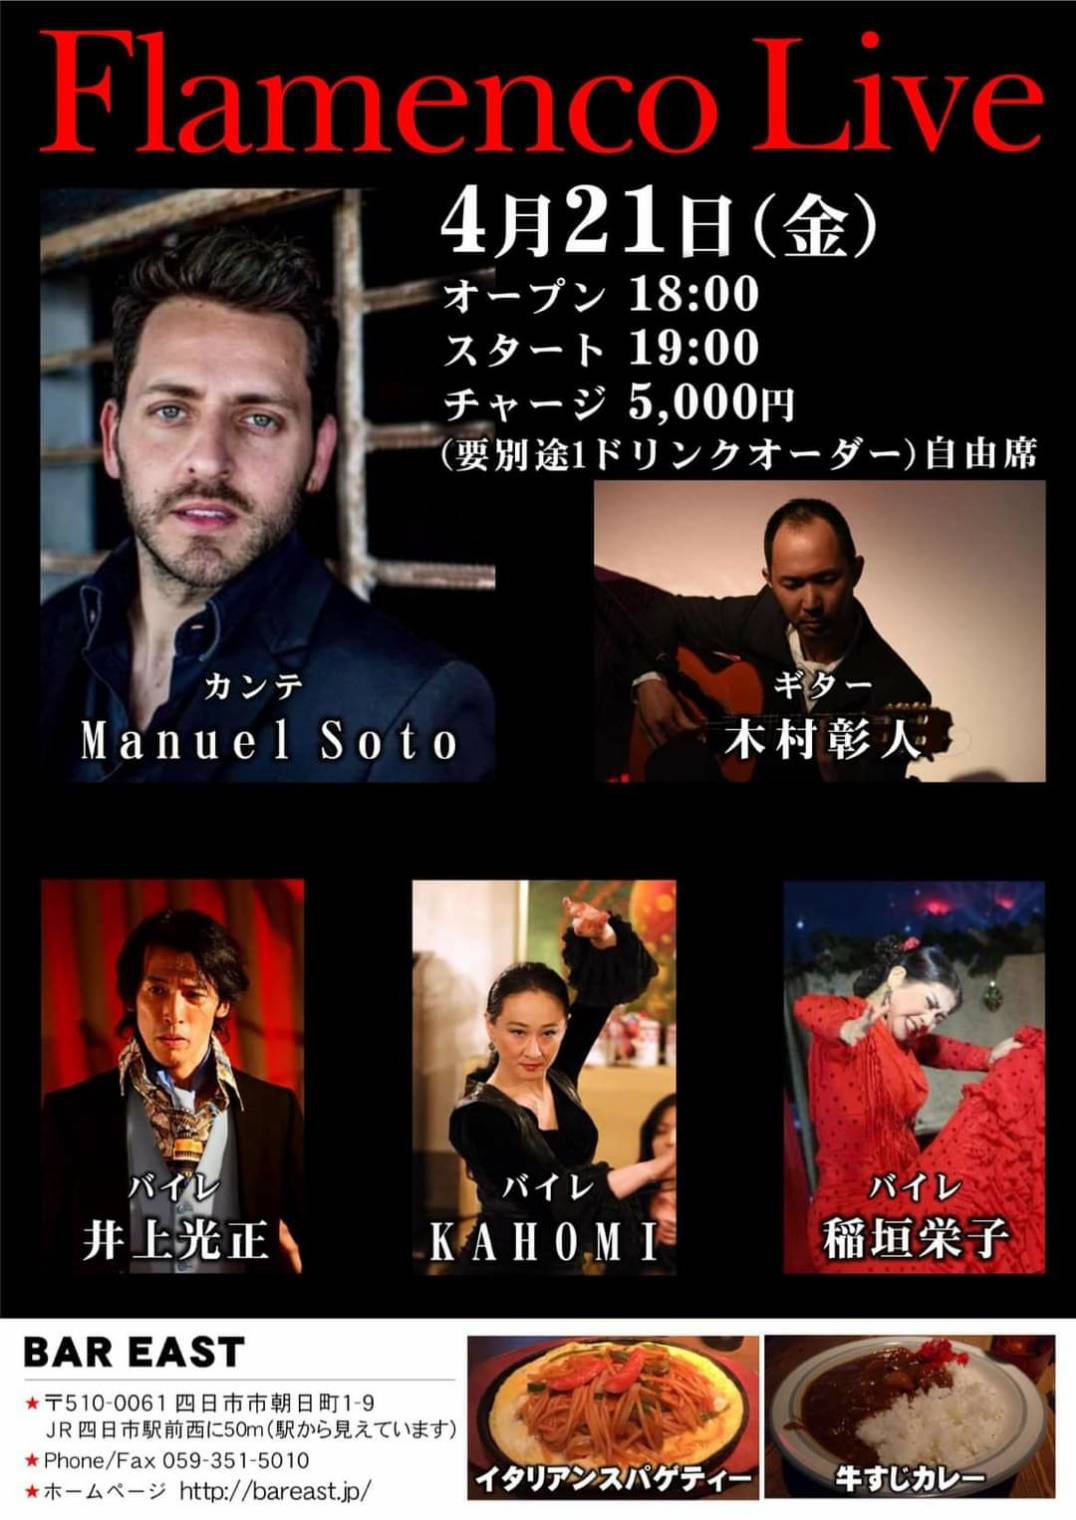 2023年4月21日(金)三重県四日市 Flamenco Live 出演